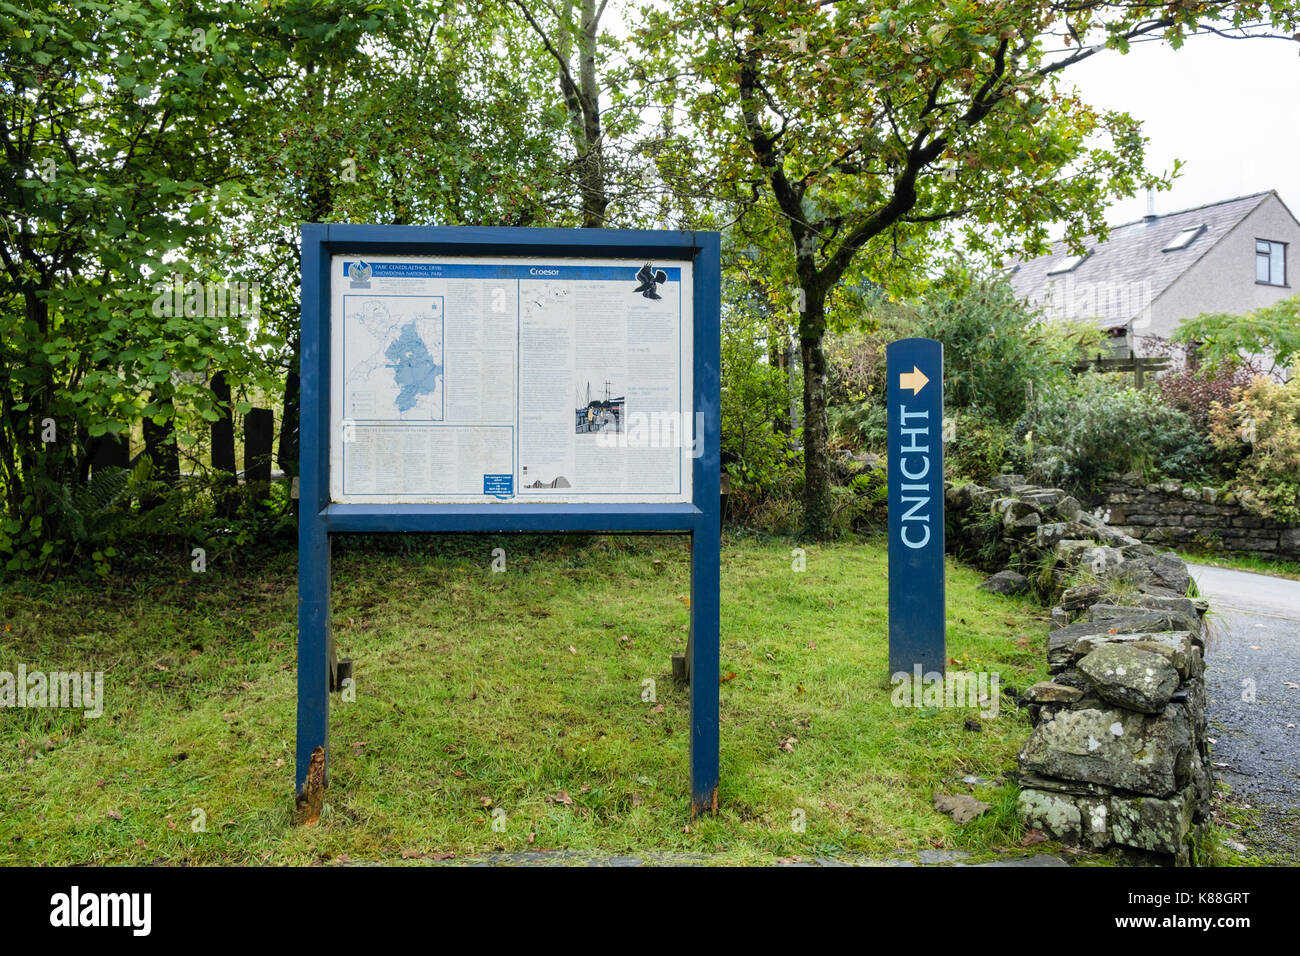 Welsh bilingue Inglese / scheda di informazioni e accedere al percorso Cnicht nel villaggio di parcheggio nel Parco Nazionale di Snowdonia. Croesor Gwynedd Wales UK Gran Bretagna Foto Stock